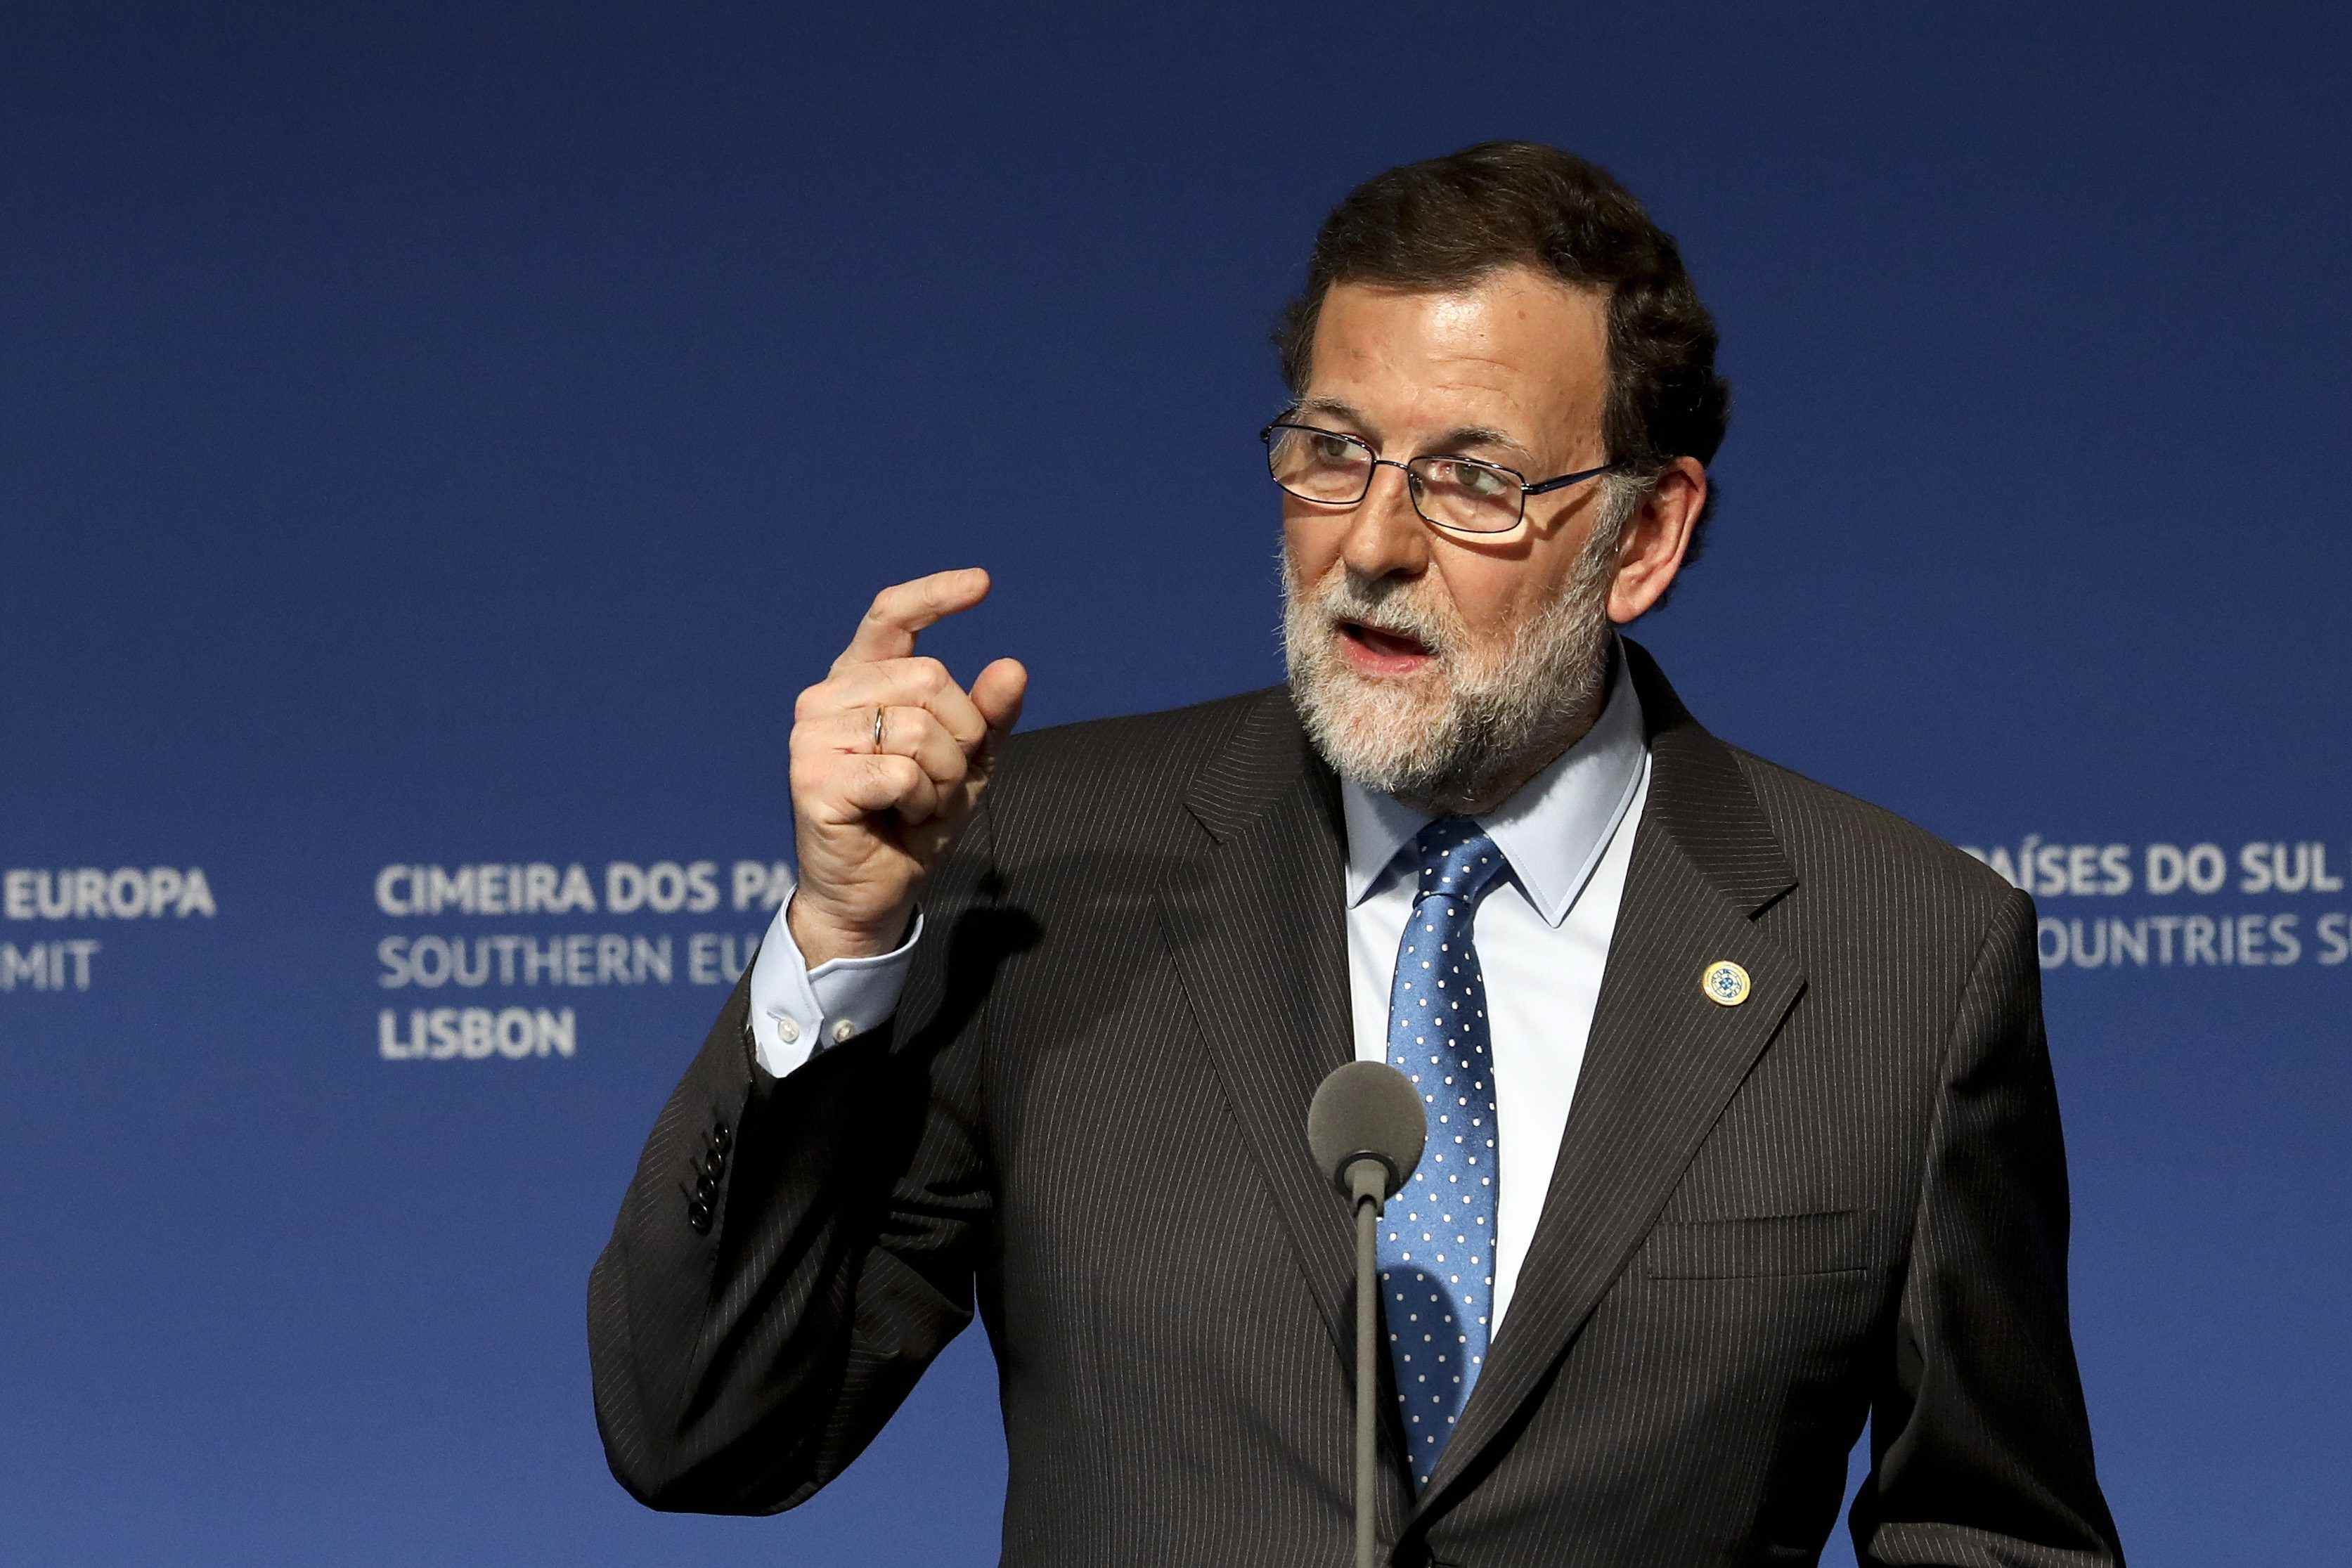 El govern espanyol, després del pacte pressupostari: "No hi haurà referèndum"